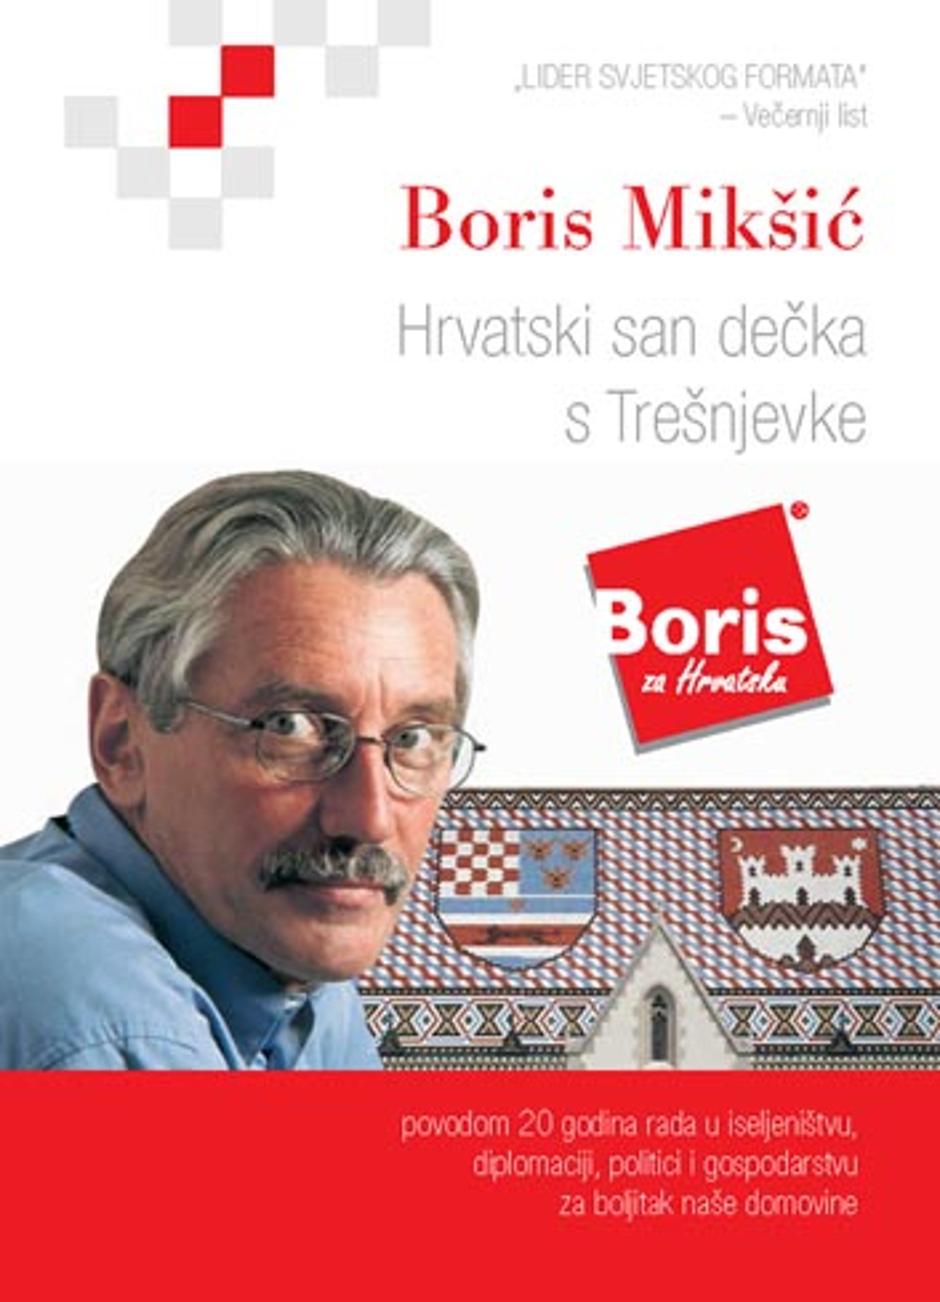 Naslovnica autobiografije Borisa Mikšića | Author: PROMO